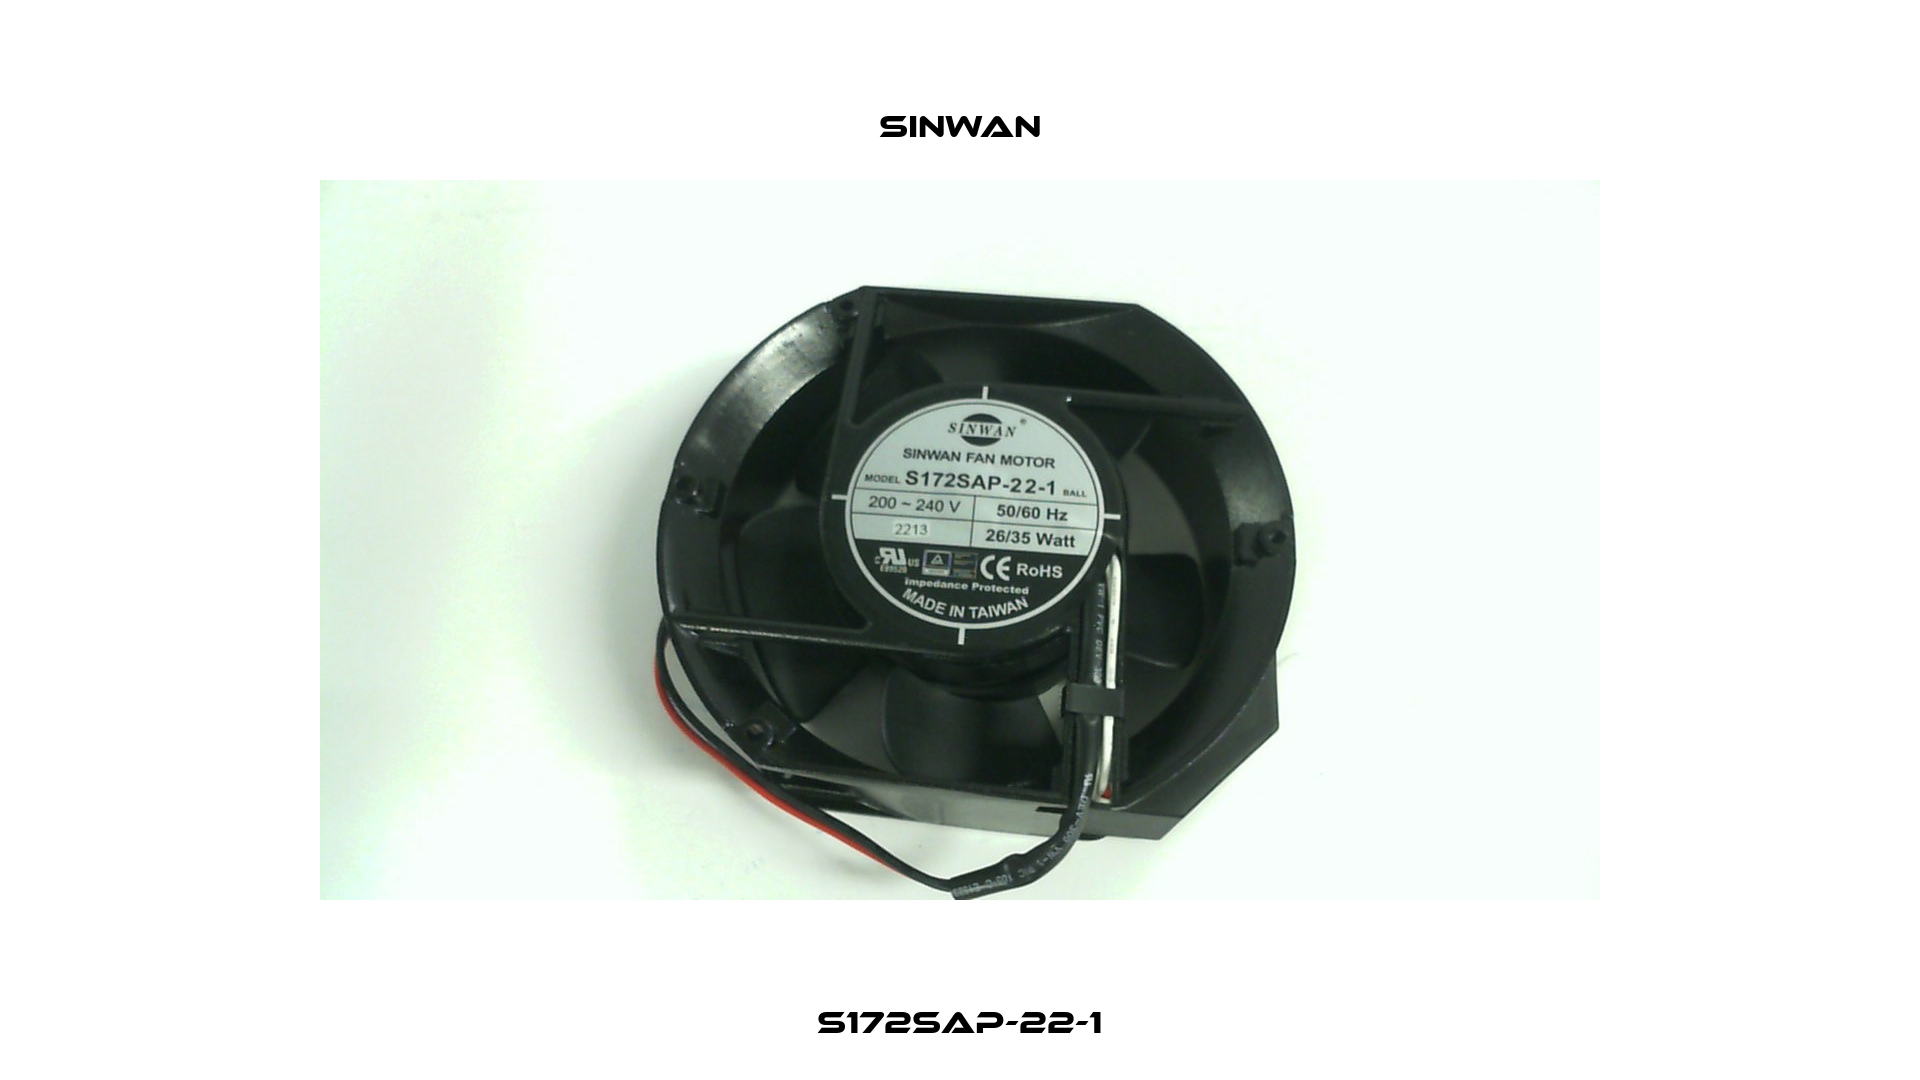 S172SAP-22-1 Sinwan